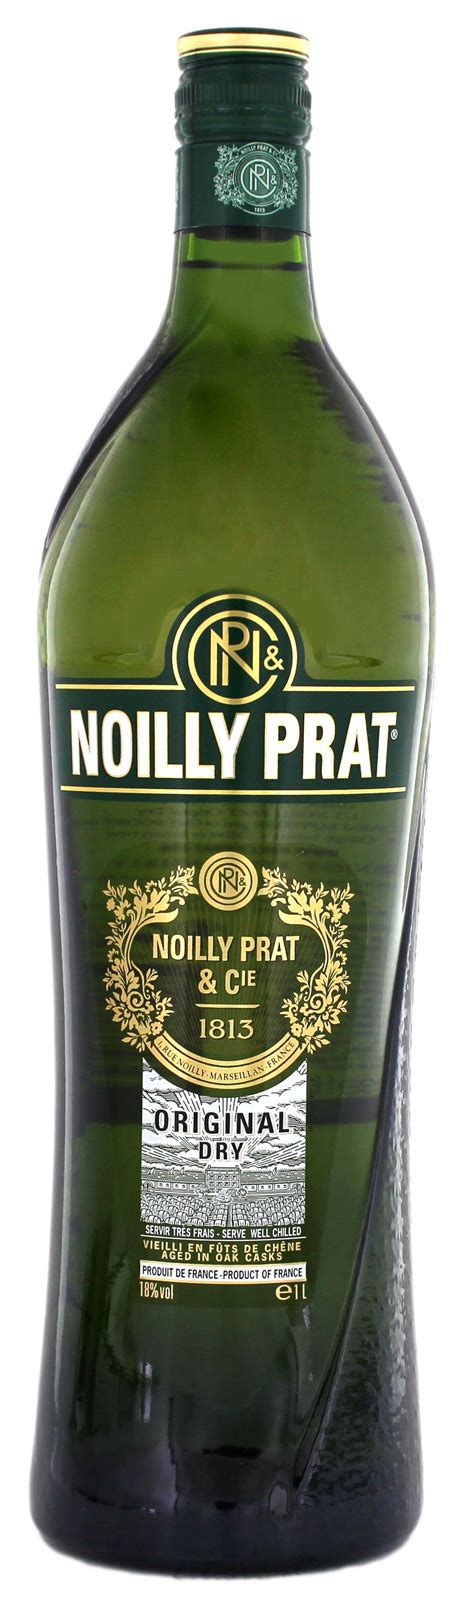 Noilly Prat French Dry Vermouth Jetzt Kaufen Wermut Online Shop